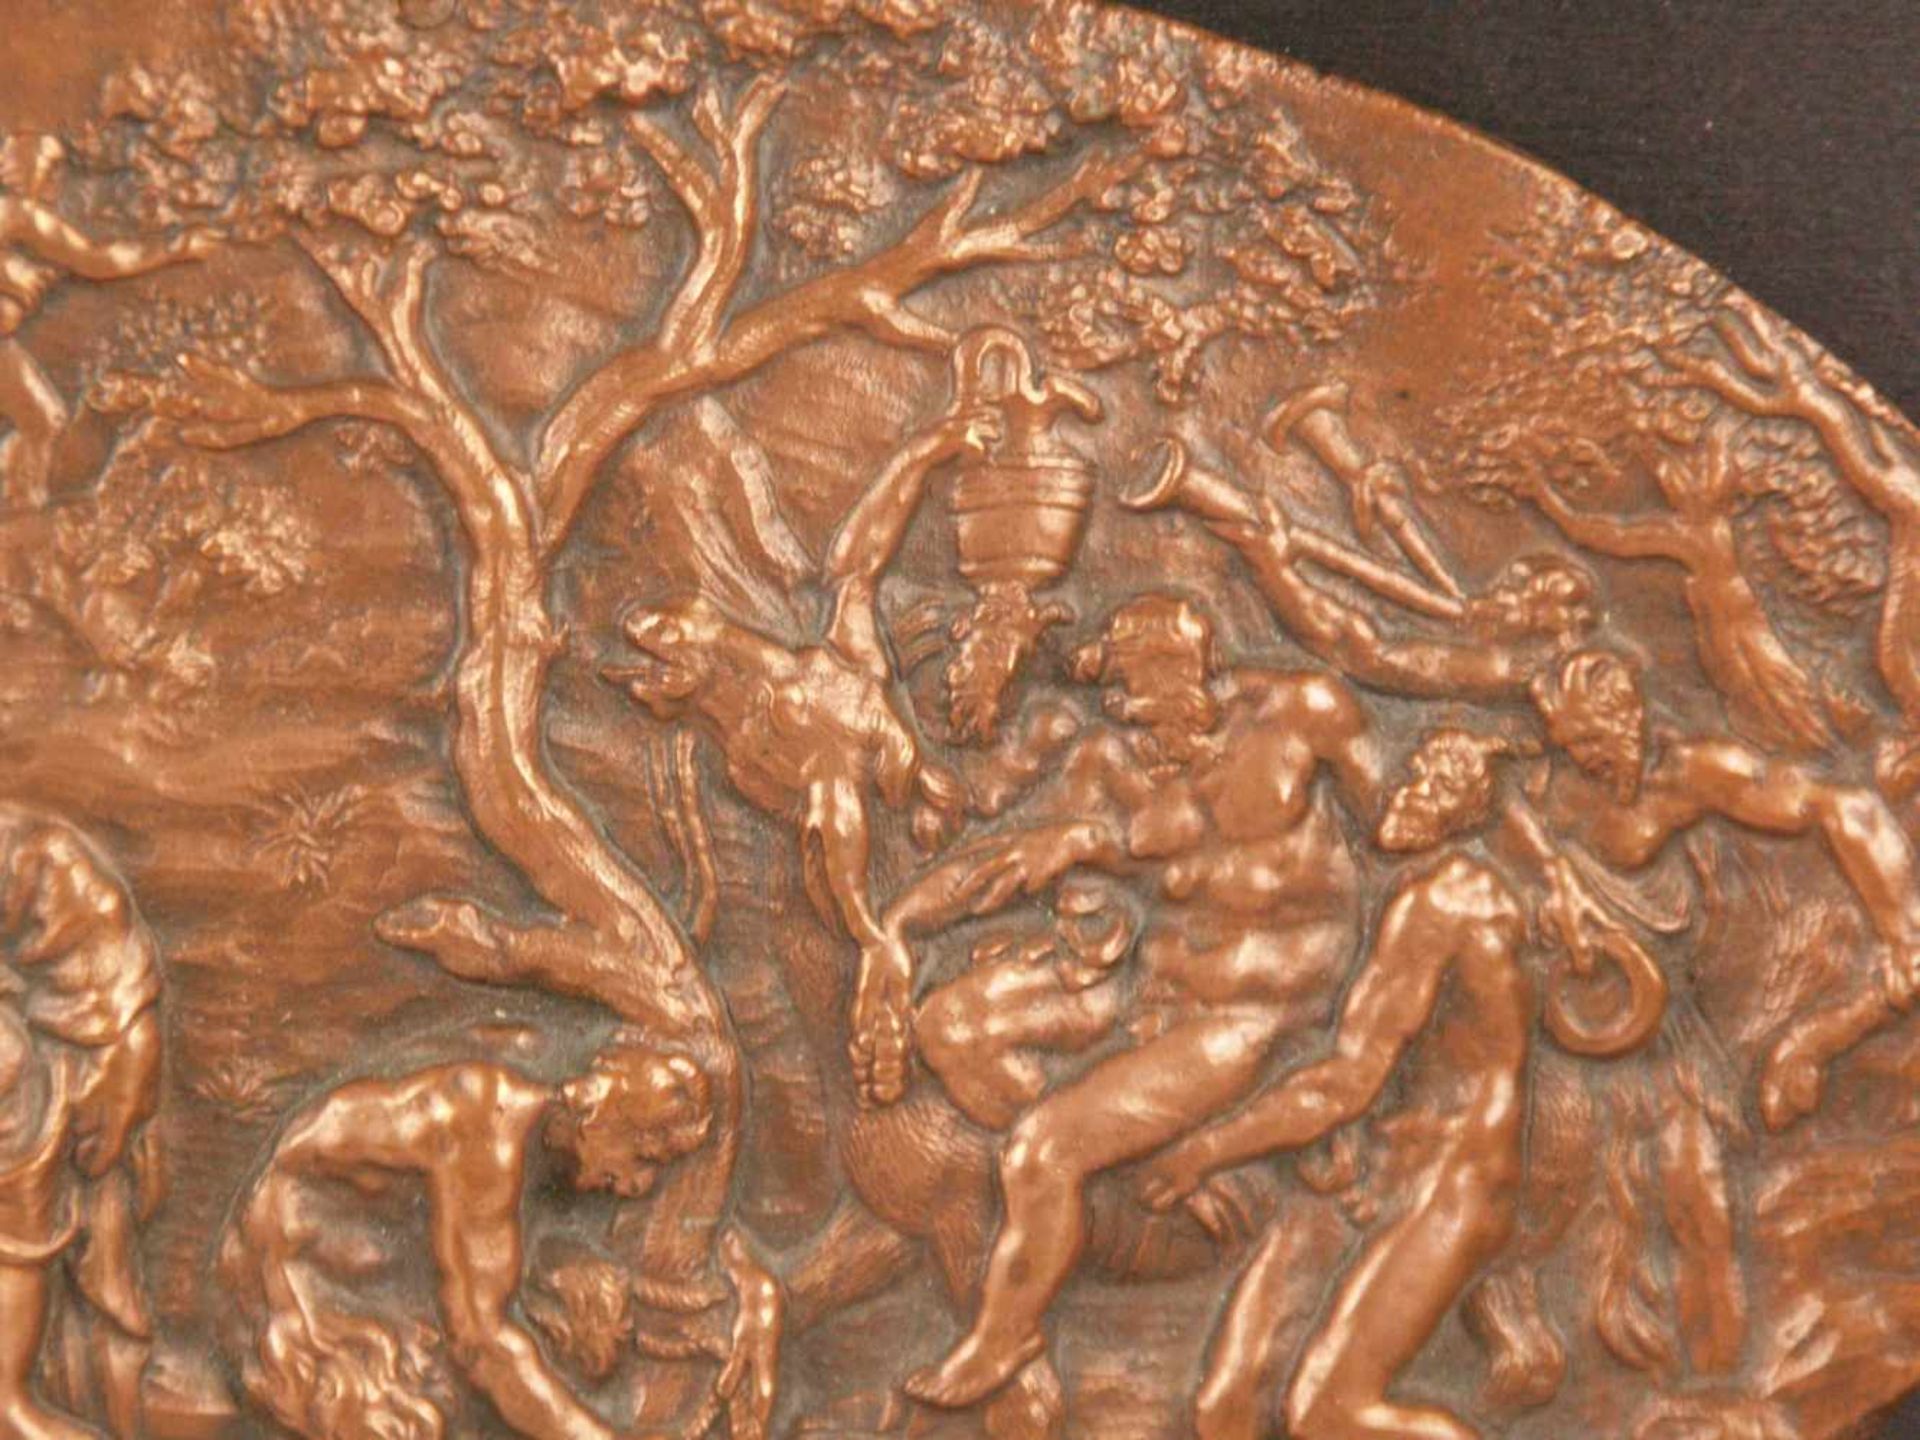 Ovale Reliefplakette "Bacchanal" - Kupfer bzw. Kupferbronze,aus mehreren Einzelszenen komponiertes - Bild 4 aus 5